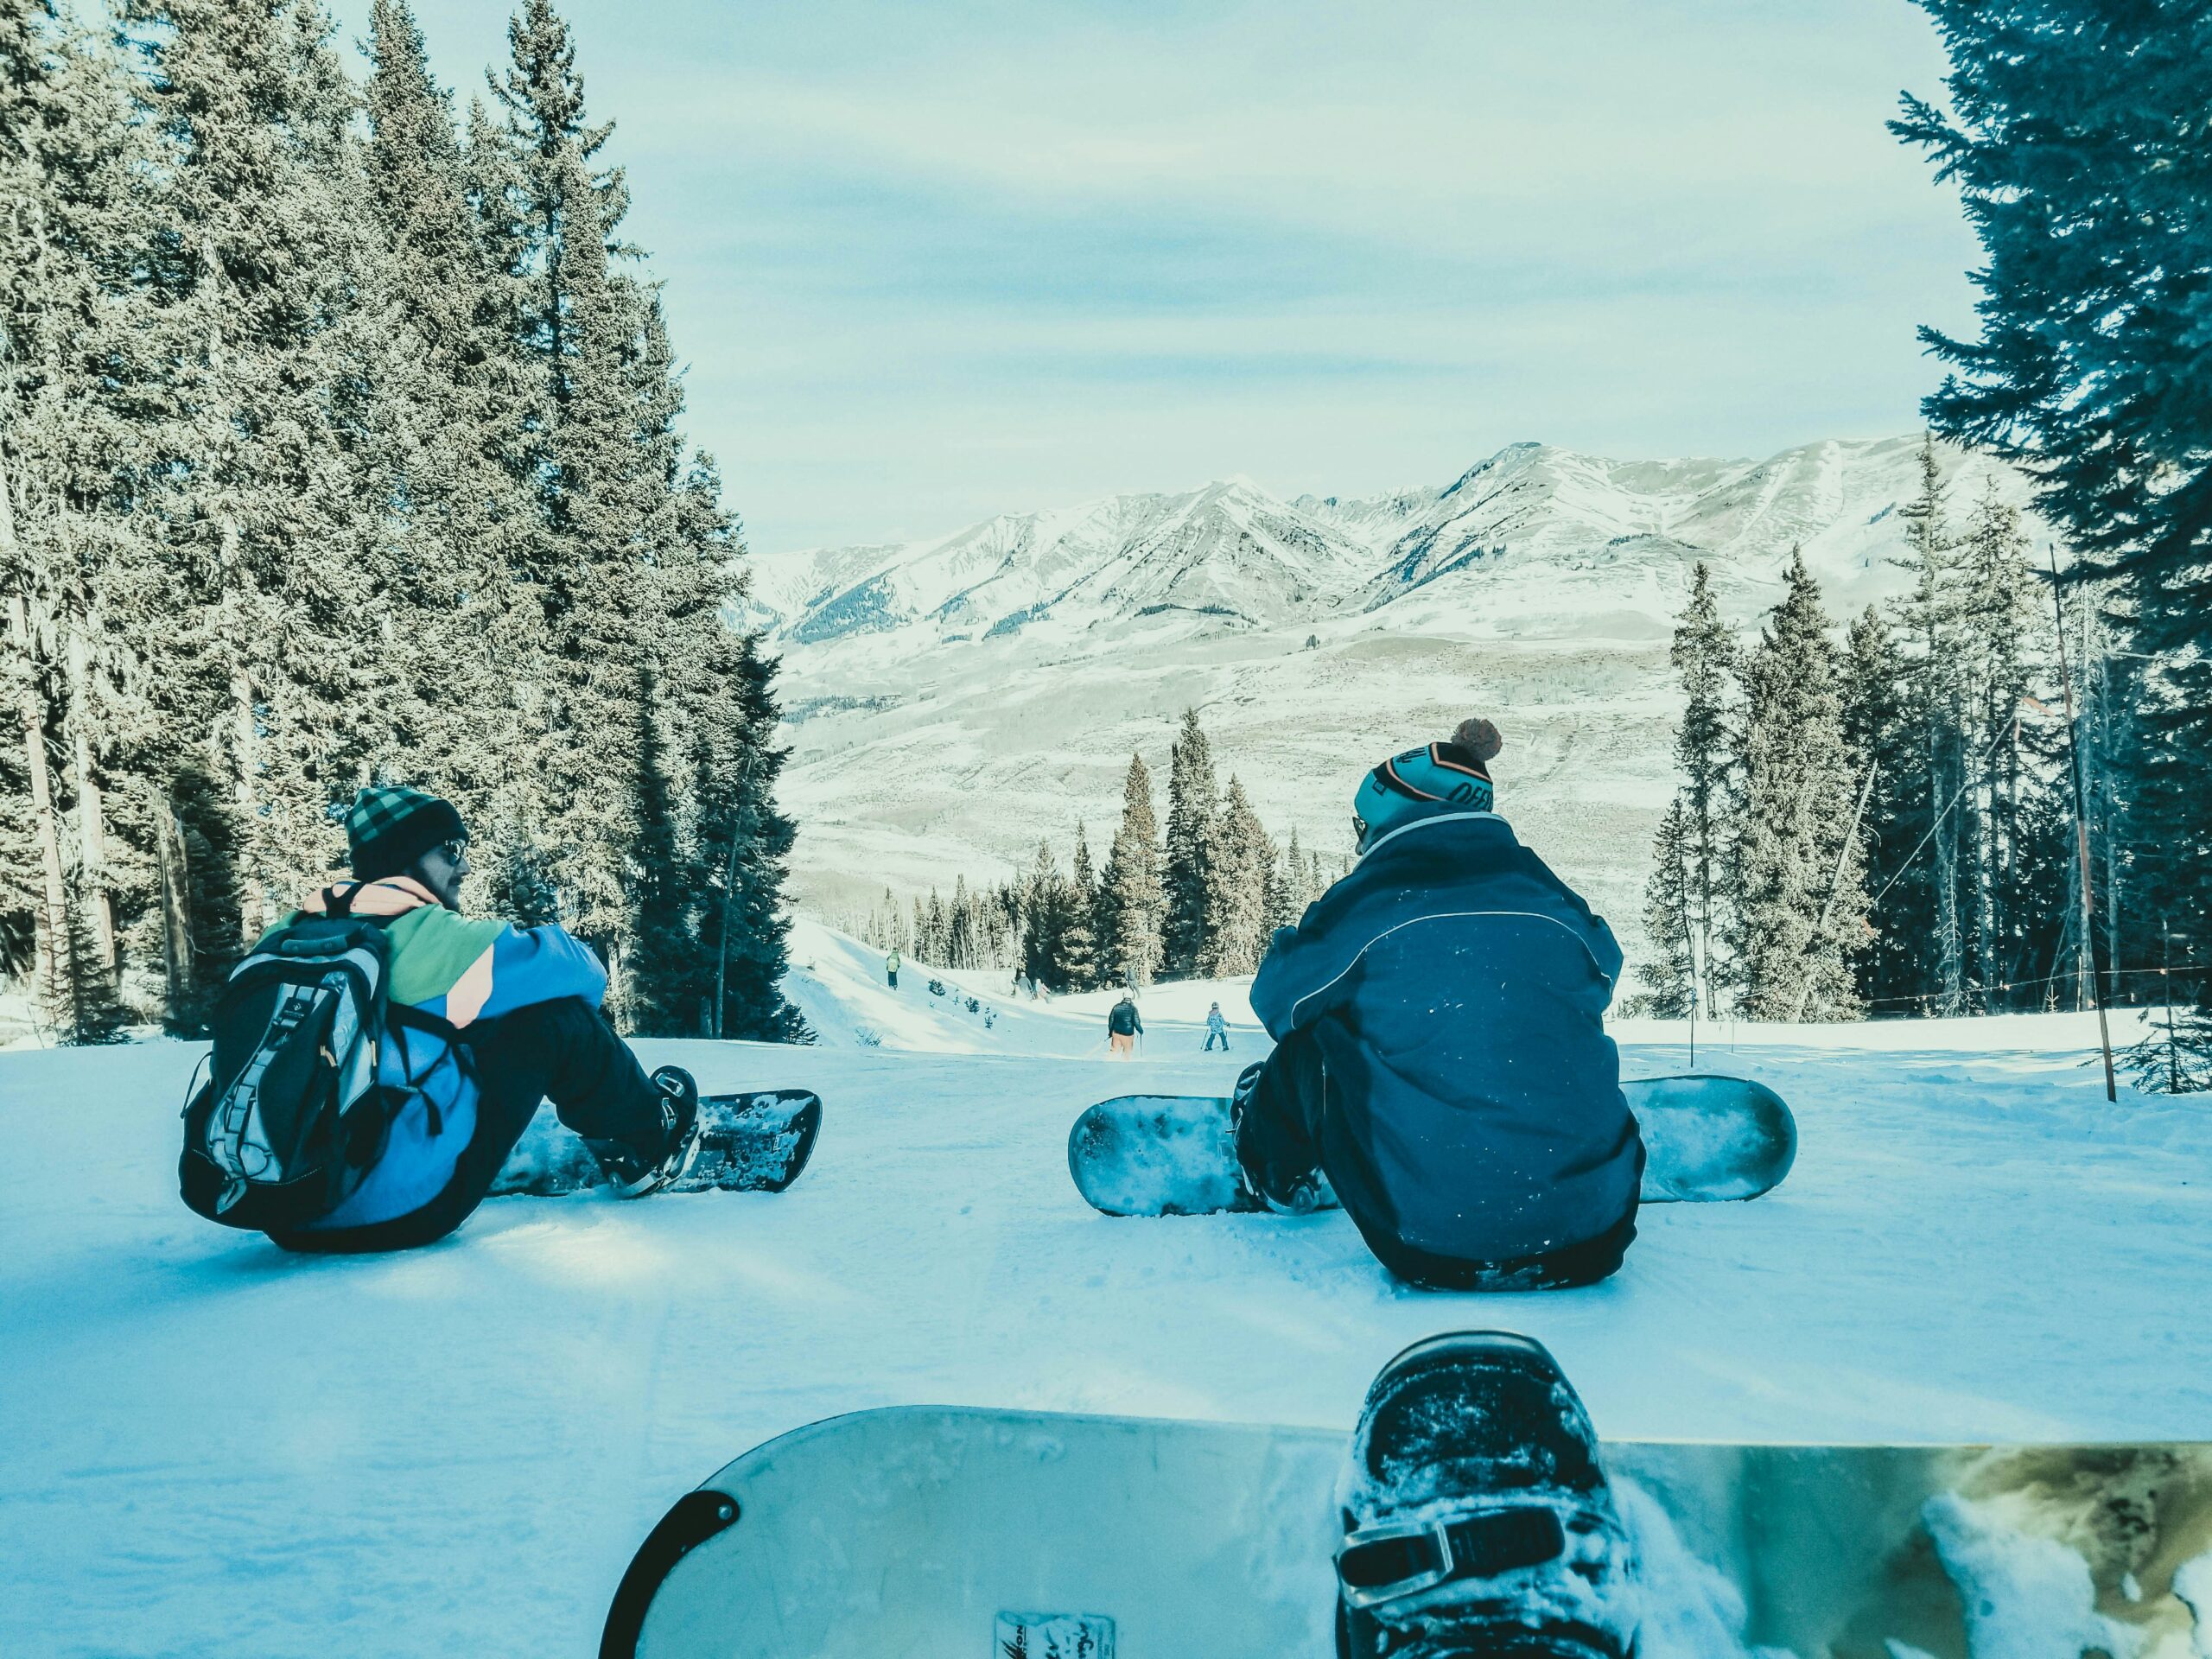 Snowboarding in Colorado